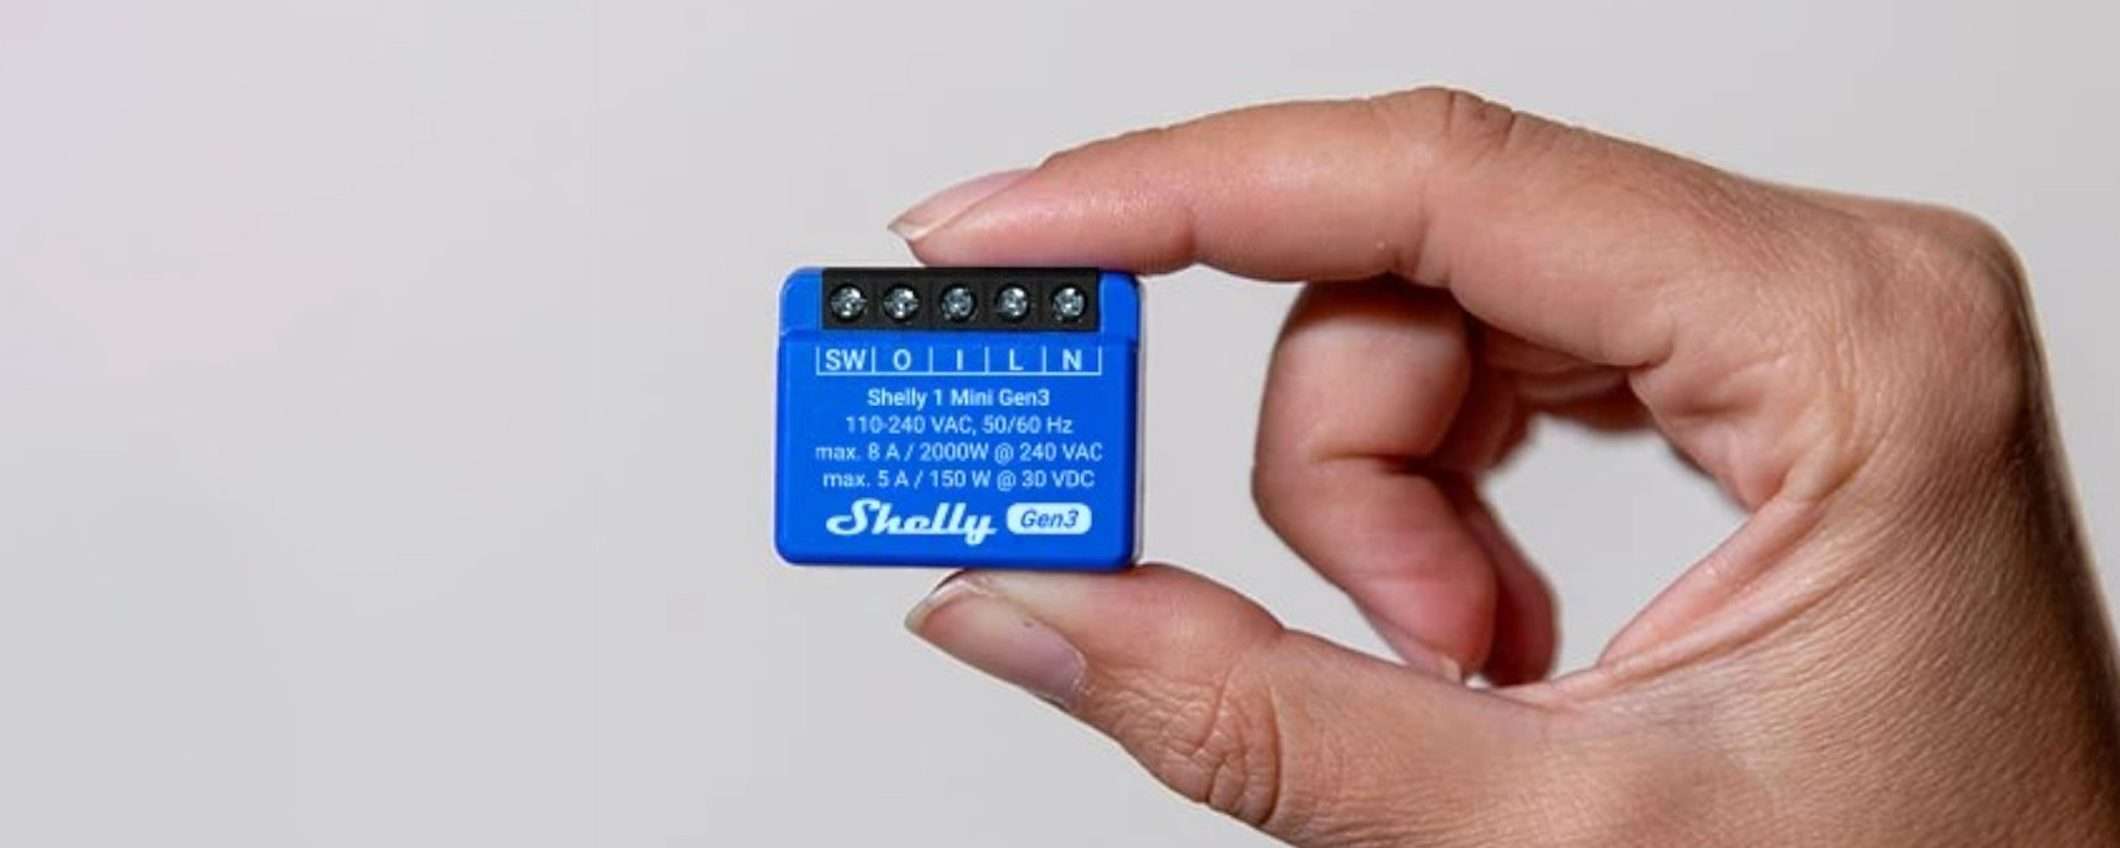 METÀ PREZZO per Shelly Plus 1 Mini Gen3, il relè Wi-Fi